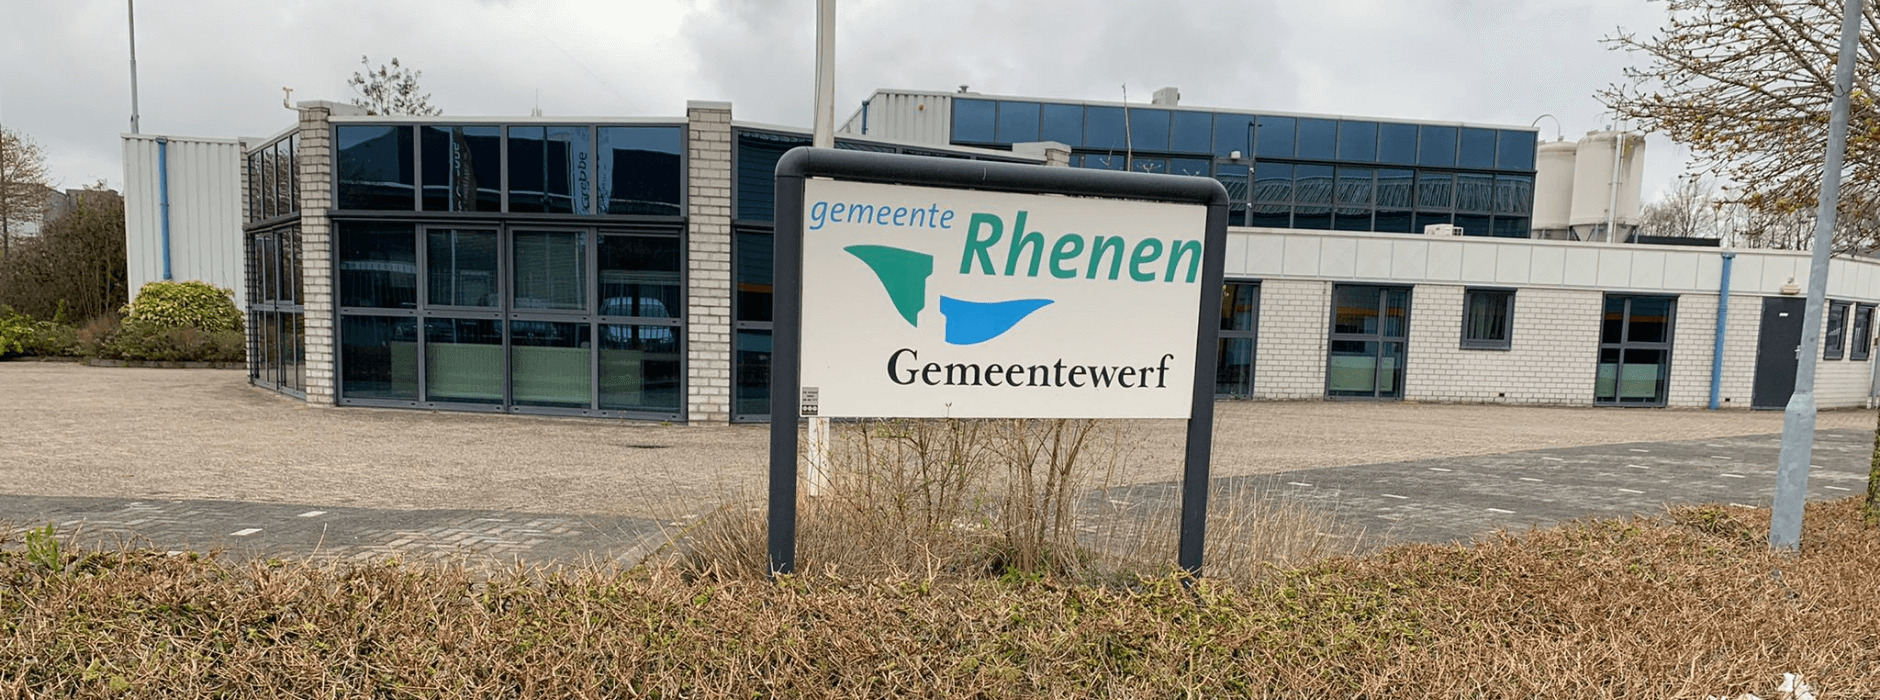 Gemeentewerf Rhenen - Remmerden - Sanacount Case